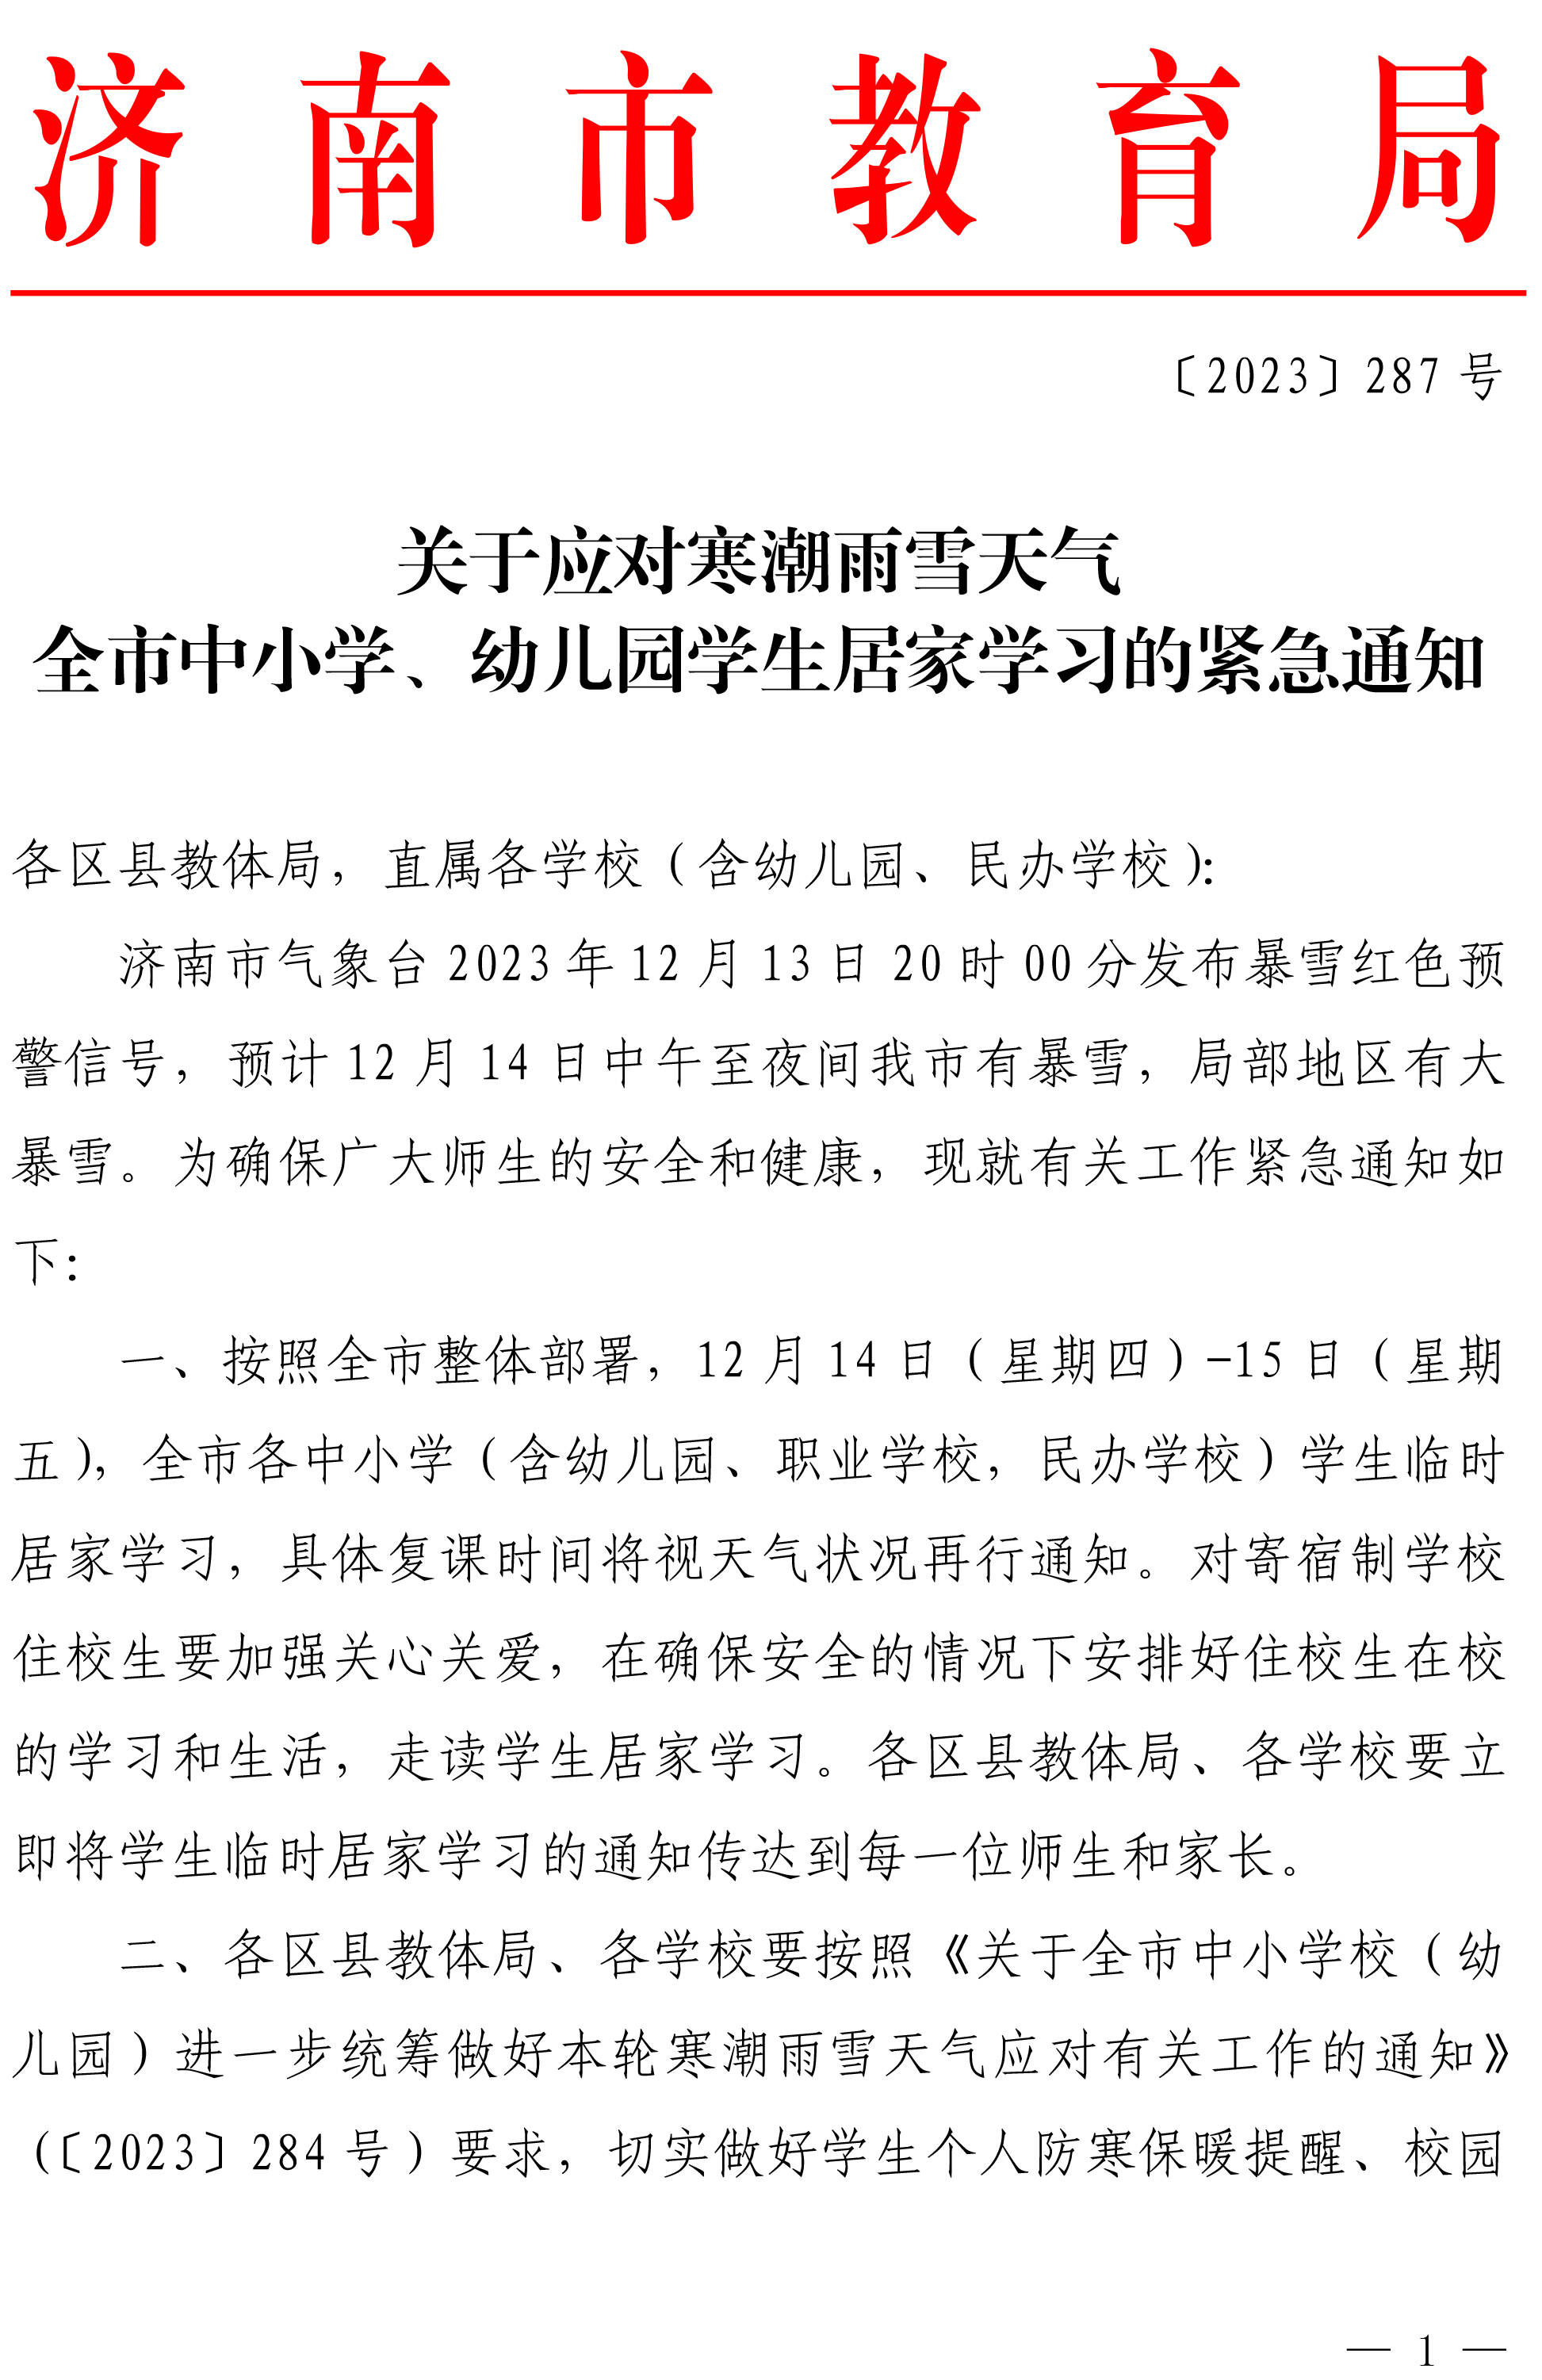 12月14日-15日济南市各中小学学生临时居家学习